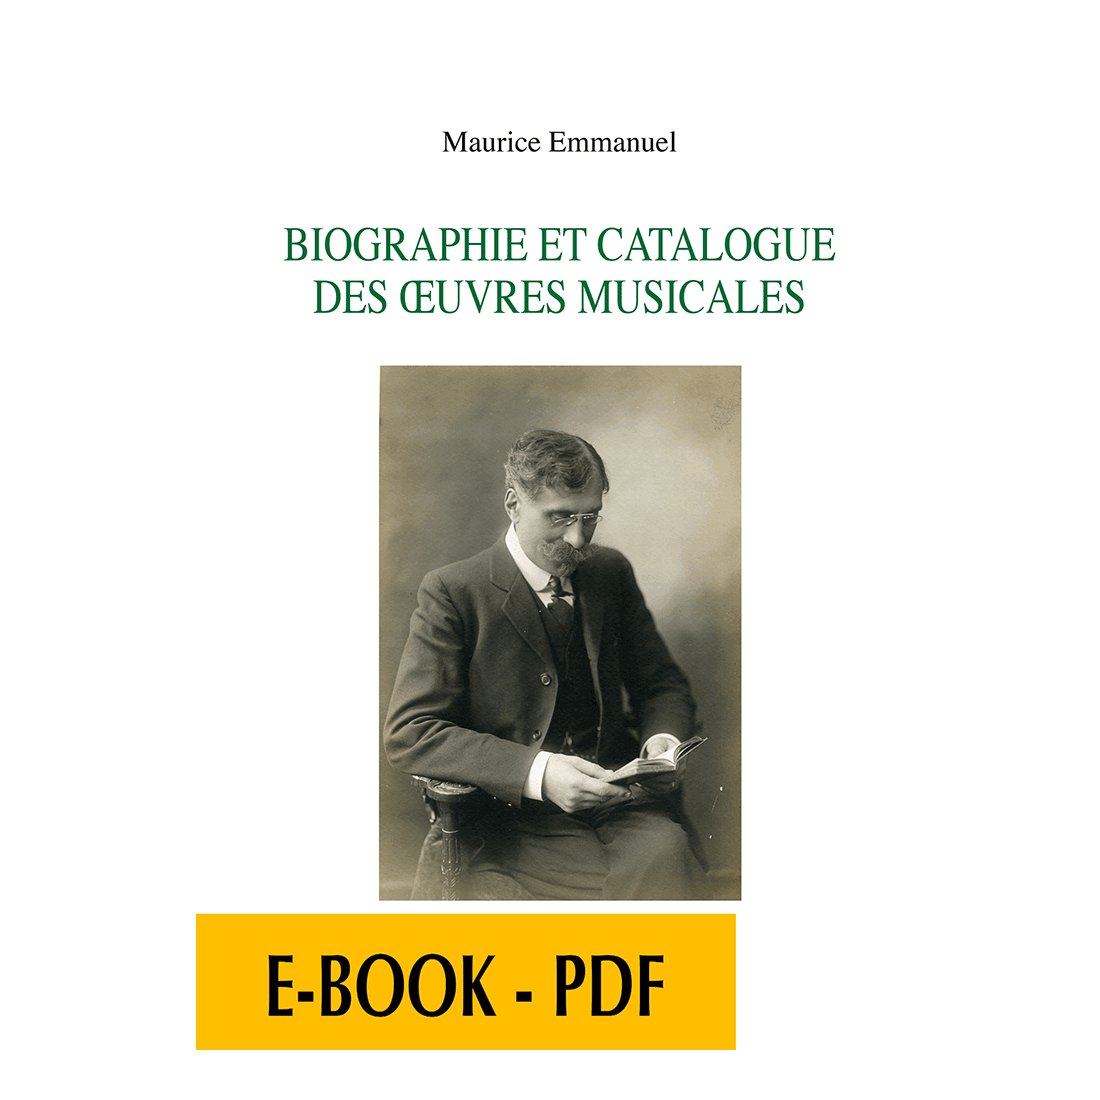 Biographie et catalogue des œuvres musicales - E-book PDF